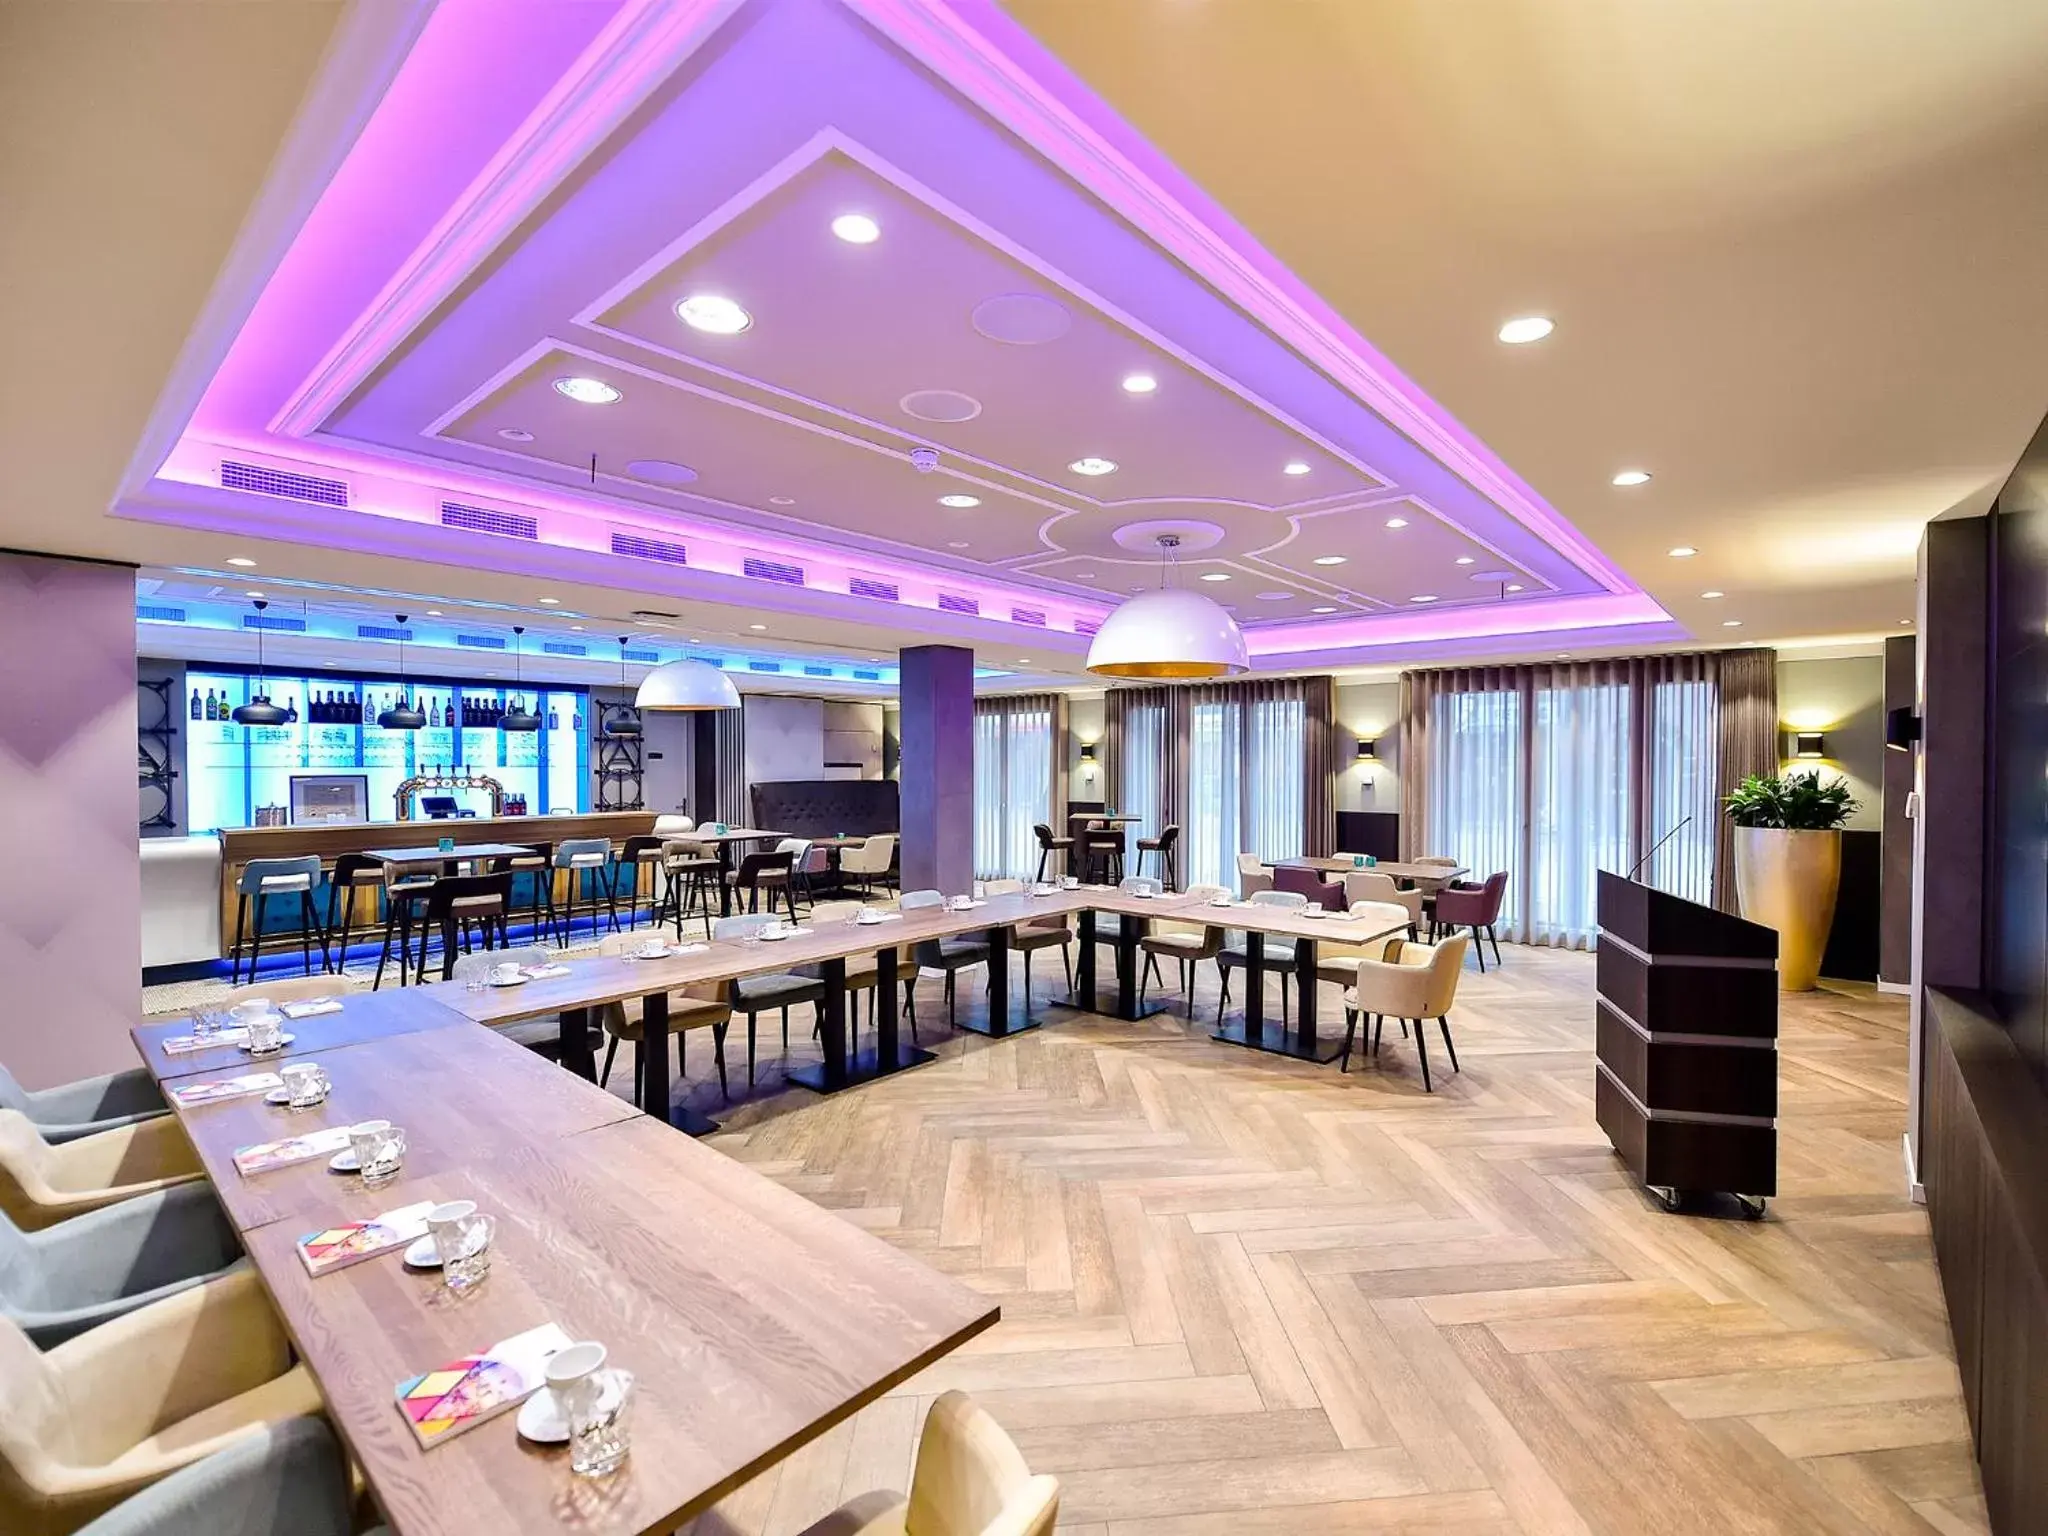 Meeting/conference room, Restaurant/Places to Eat in Brasserie-Hotel Antje van de Statie